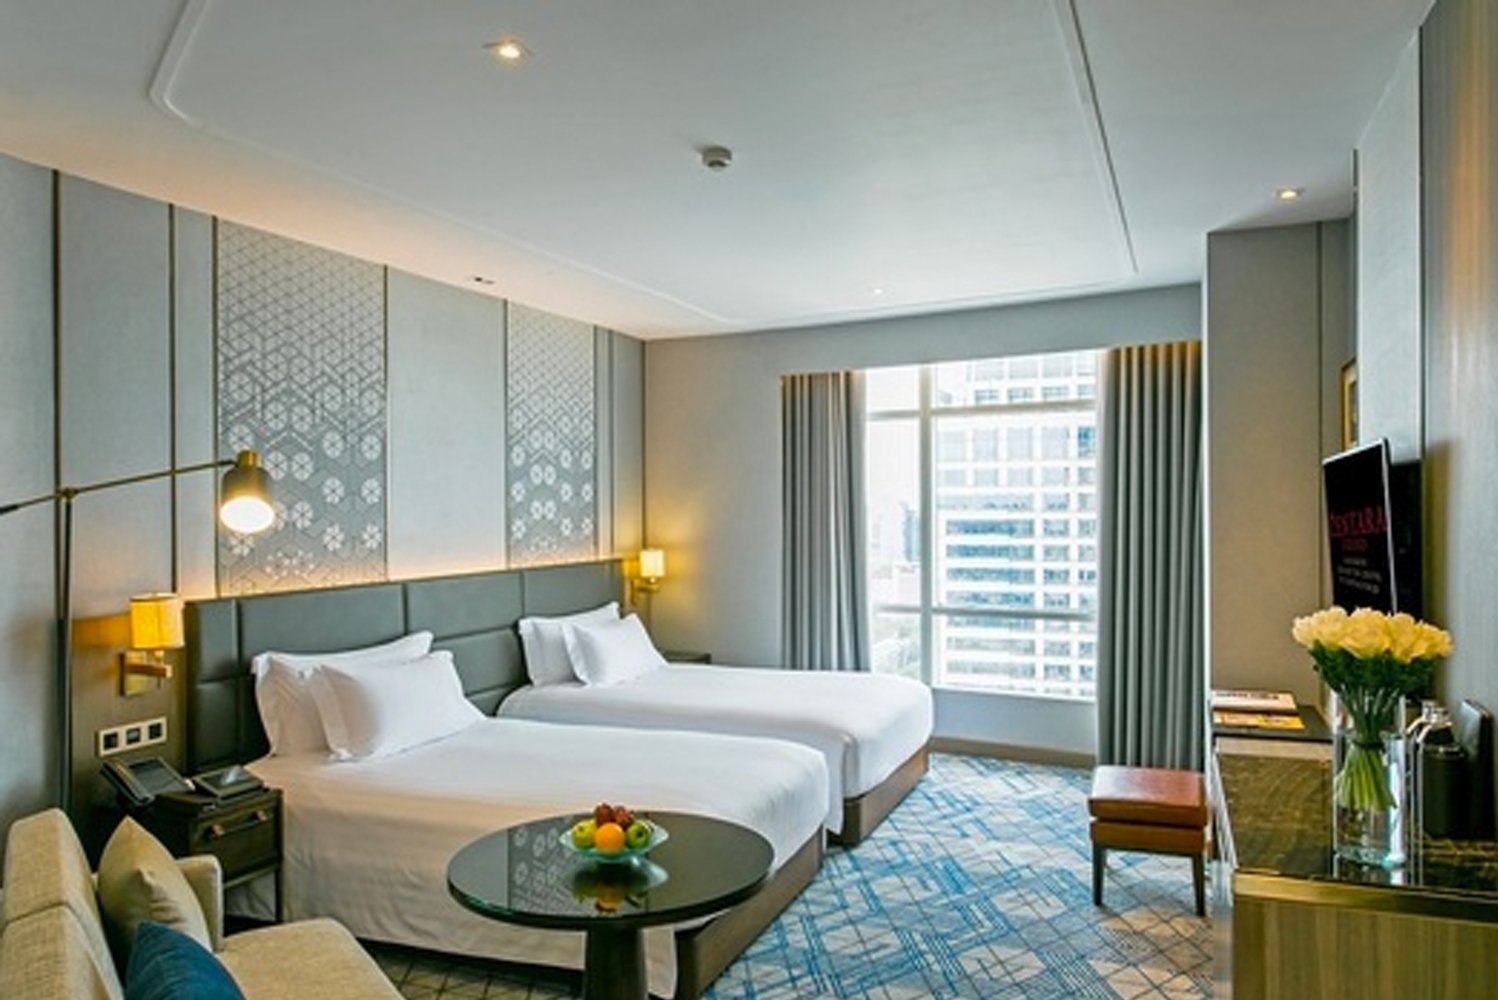 Centara begins room upgrade at flagship Bangkok hotel